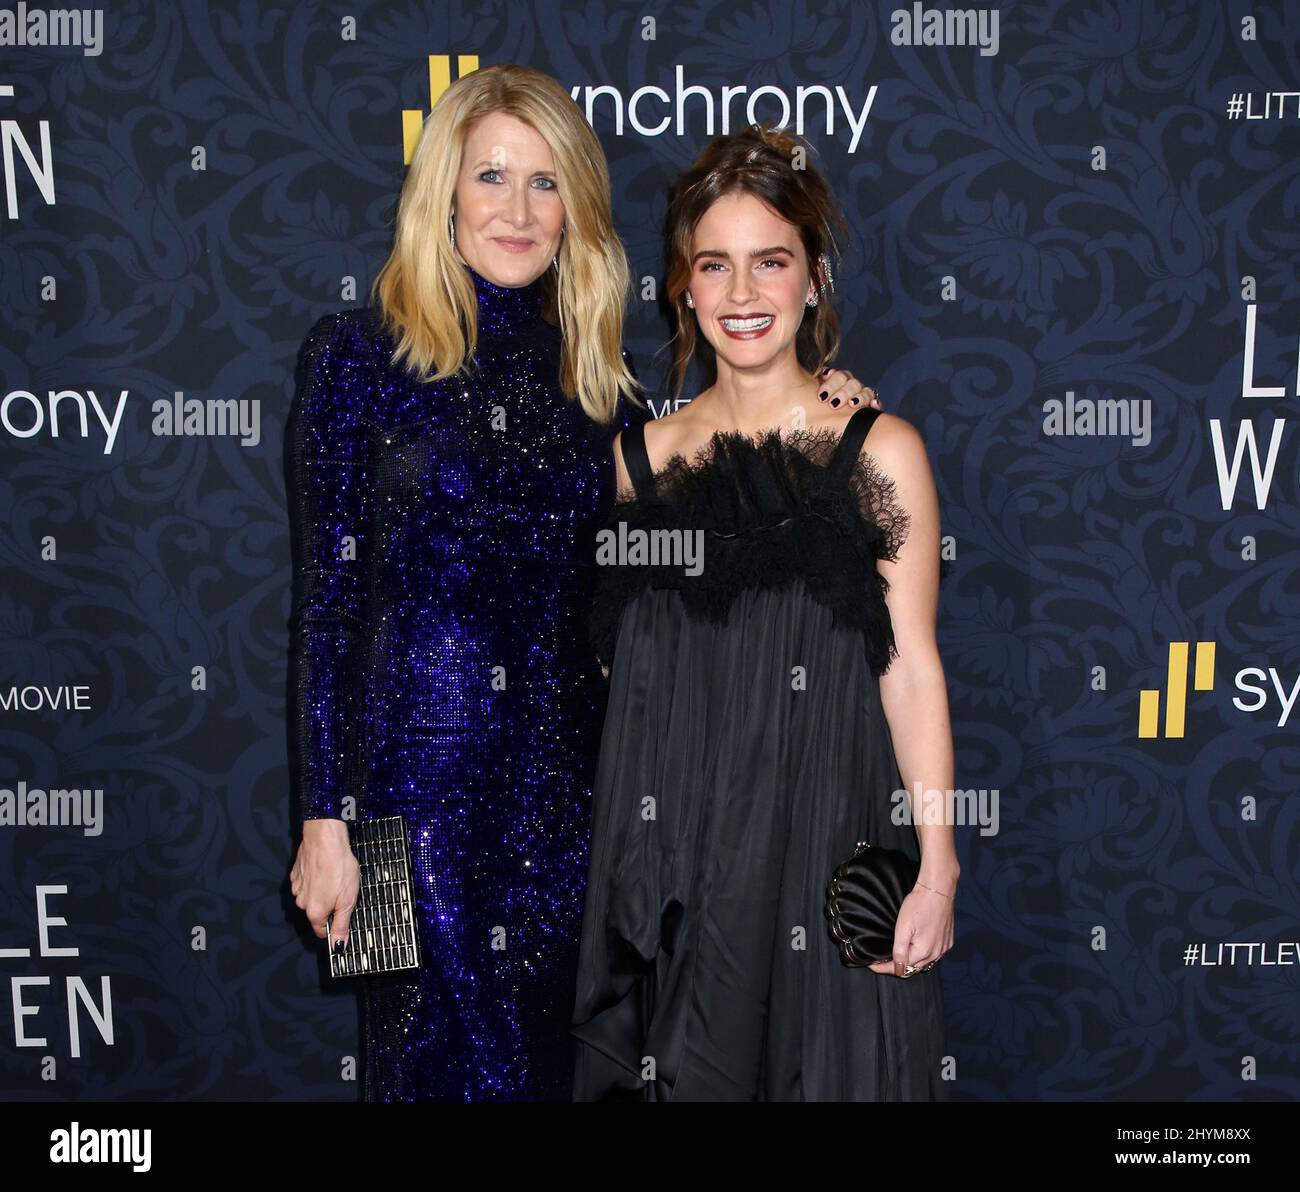 Laura Dern & Emma Watson attending the premiere of Little Women in New York Stock Photo